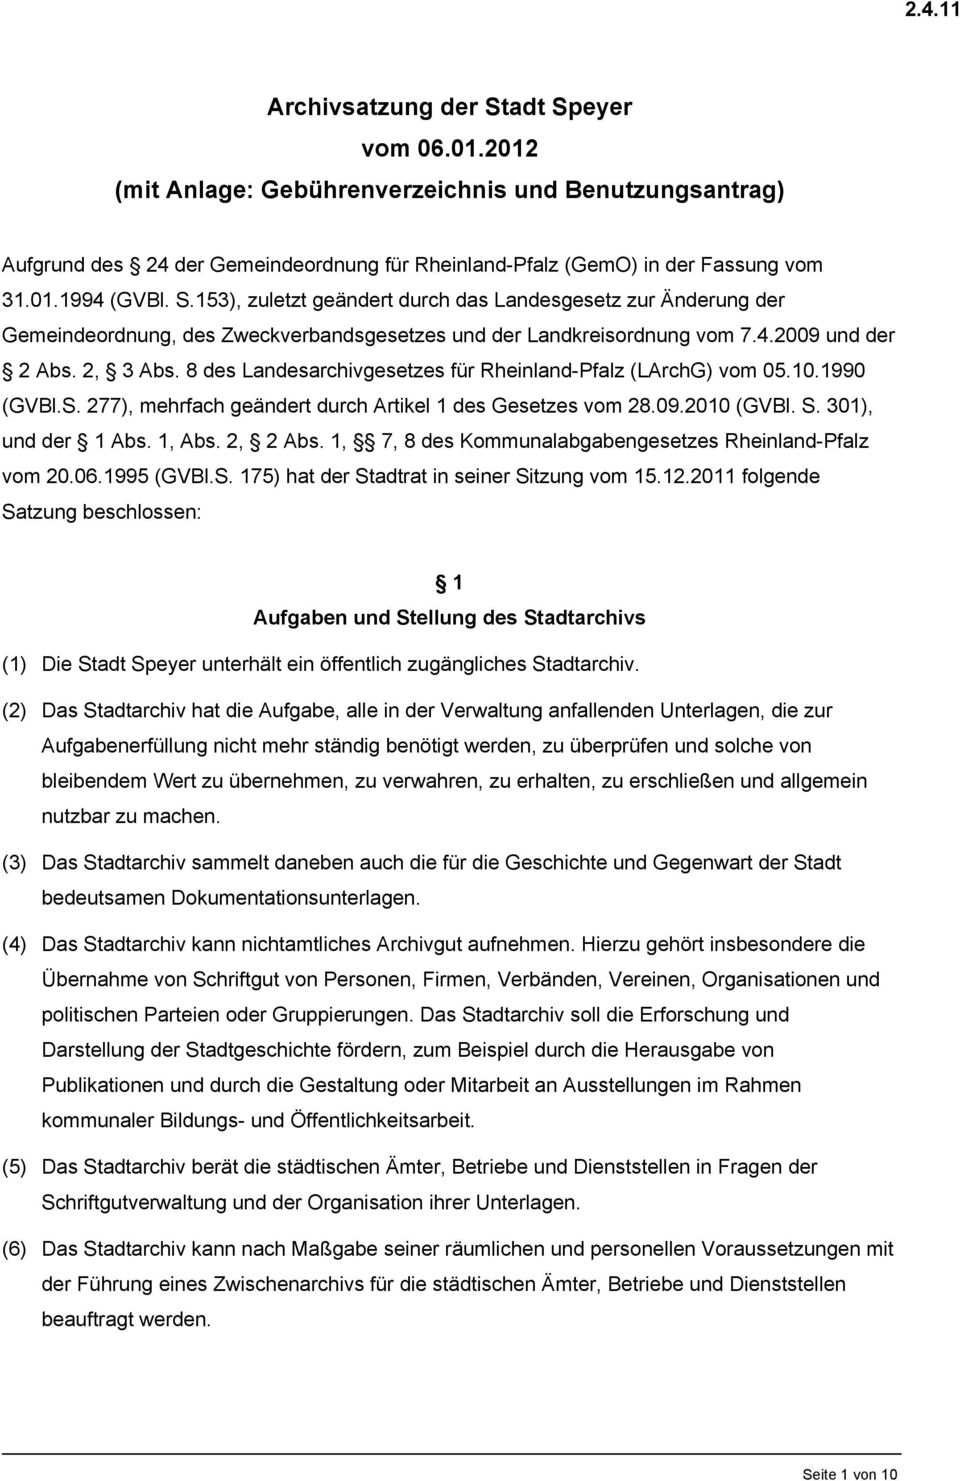 8 des Landesarchivgesetzes für Rheinland-Pfalz (LArchG) vom 05.10.1990 (GVBl.S. 277), mehrfach geändert durch Artikel 1 des Gesetzes vom 28.09.2010 (GVBl. S. 301), und der 1 Abs. 1, Abs. 2, 2 Abs.